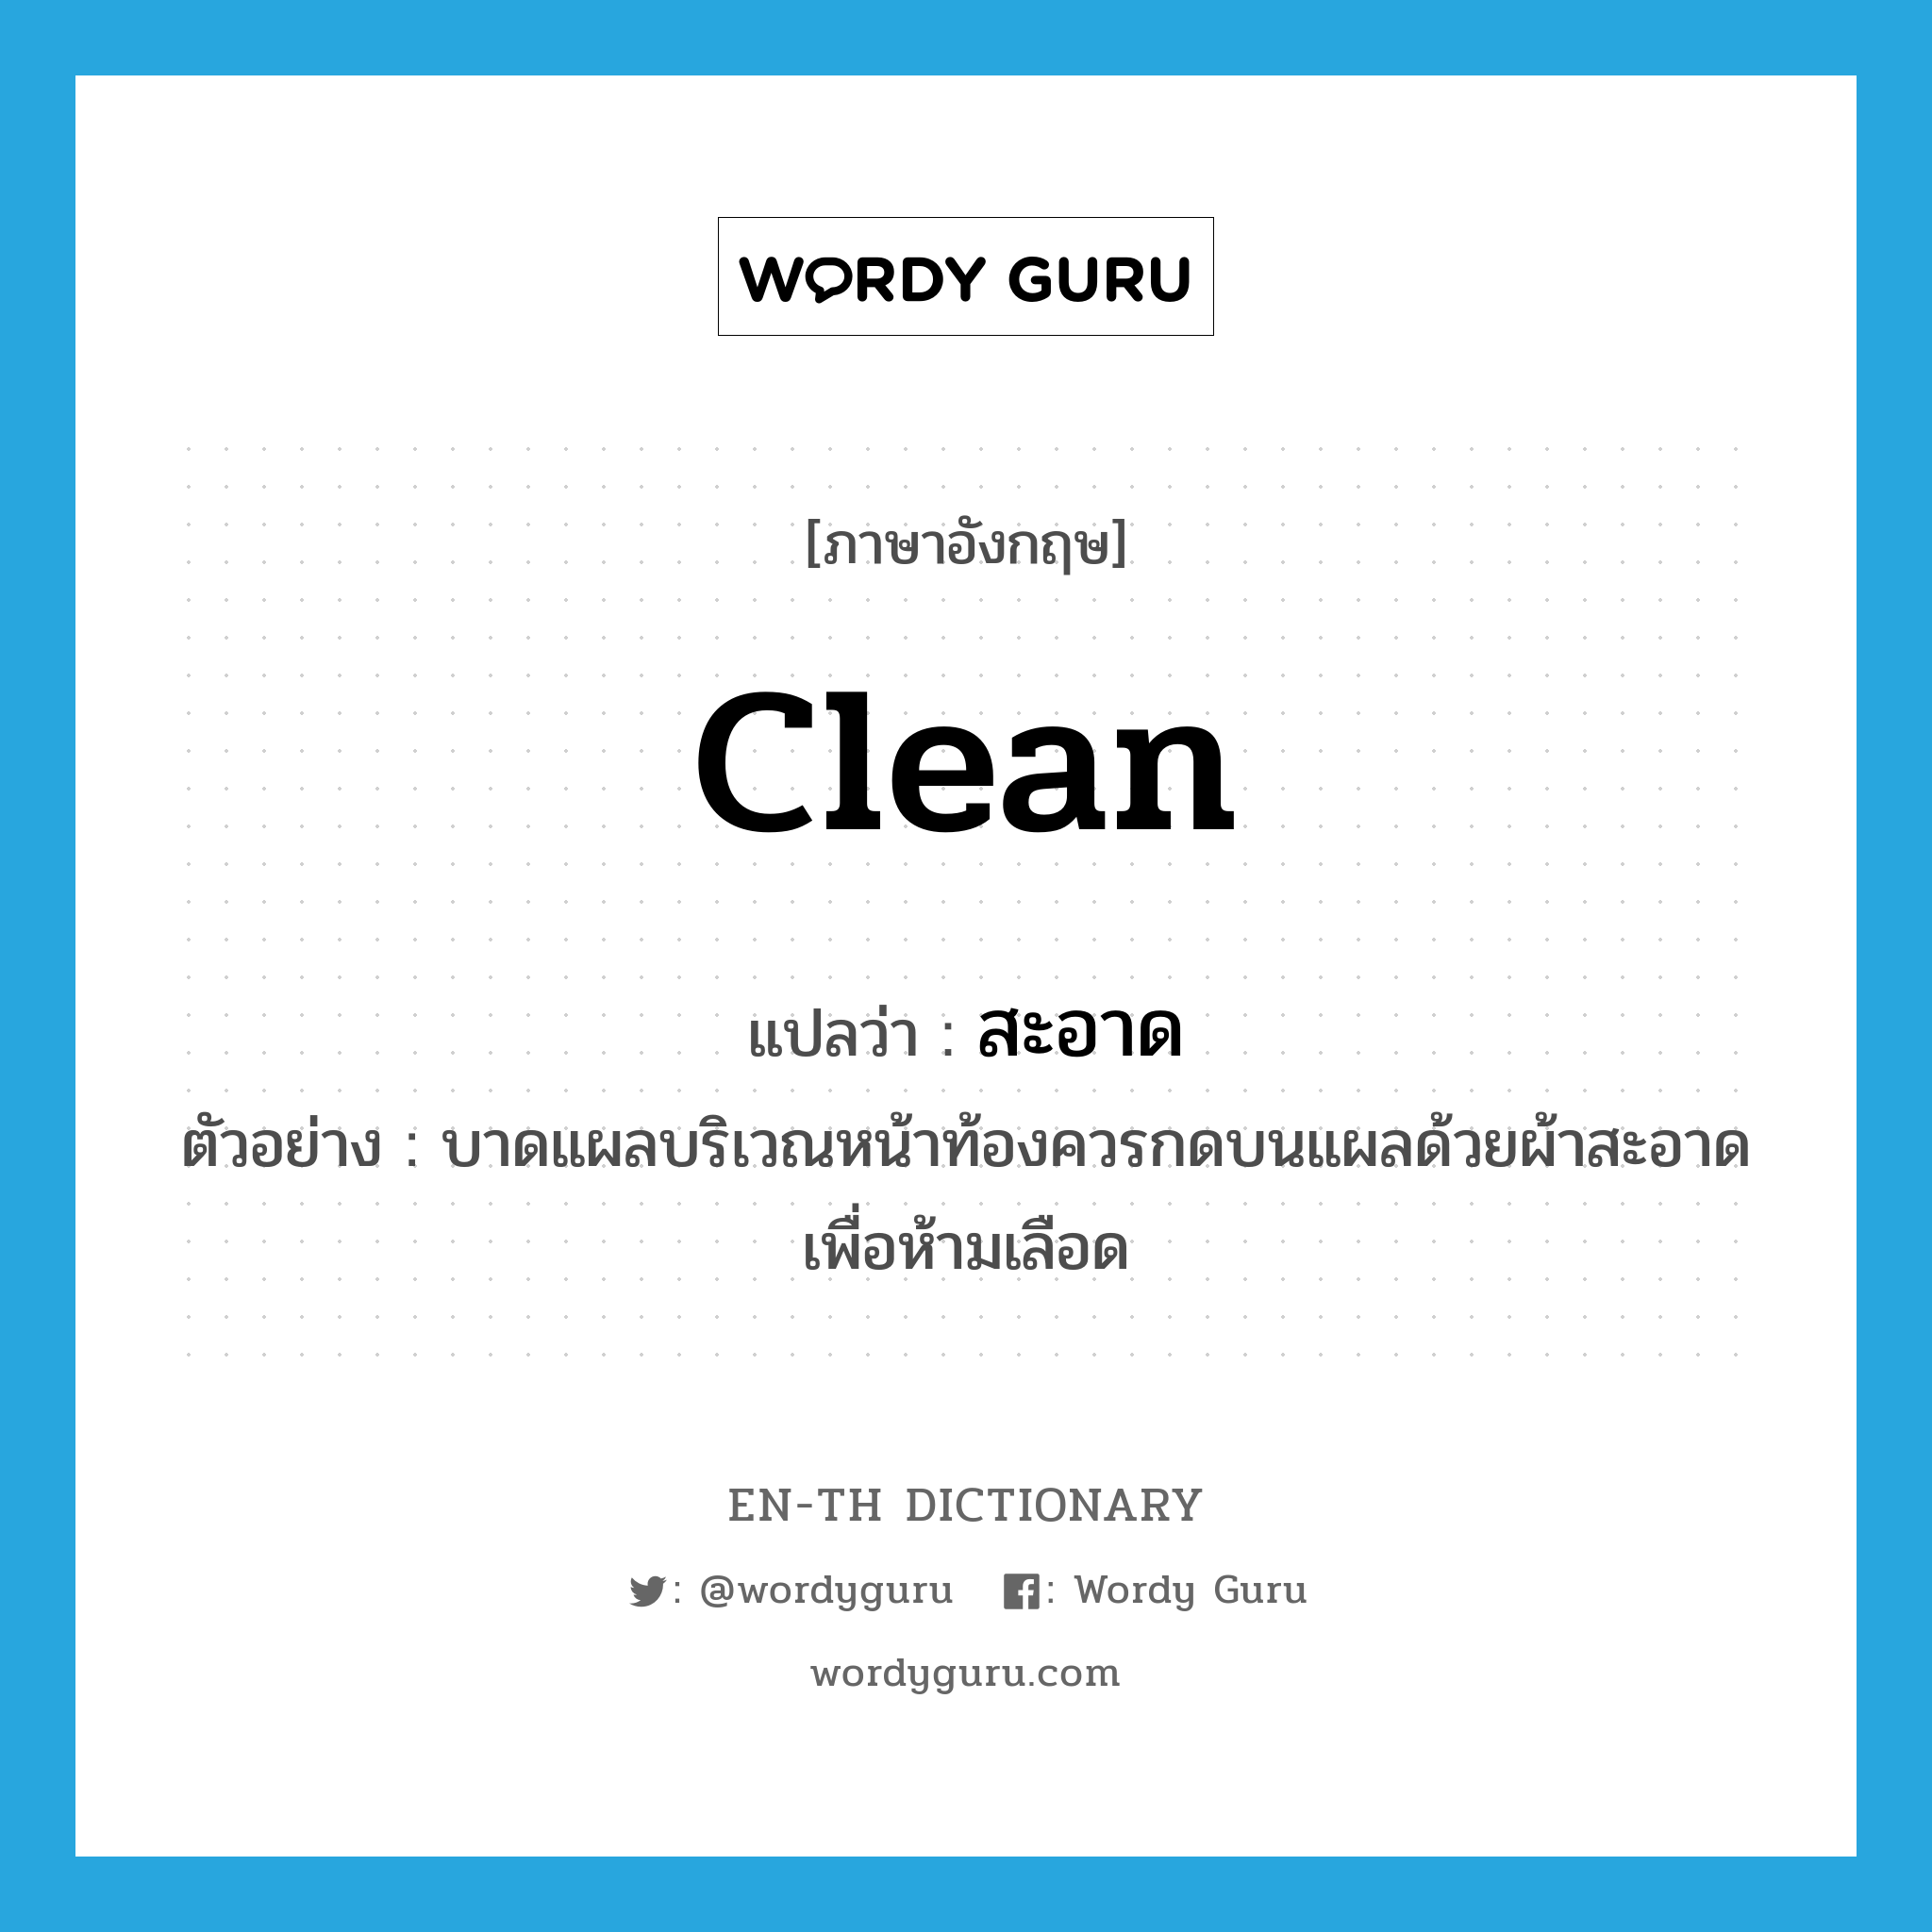 clean แปลว่า?, คำศัพท์ภาษาอังกฤษ clean แปลว่า สะอาด ประเภท ADJ ตัวอย่าง บาดแผลบริเวณหน้าท้องควรกดบนแผลด้วยผ้าสะอาดเพื่อห้ามเลือด หมวด ADJ